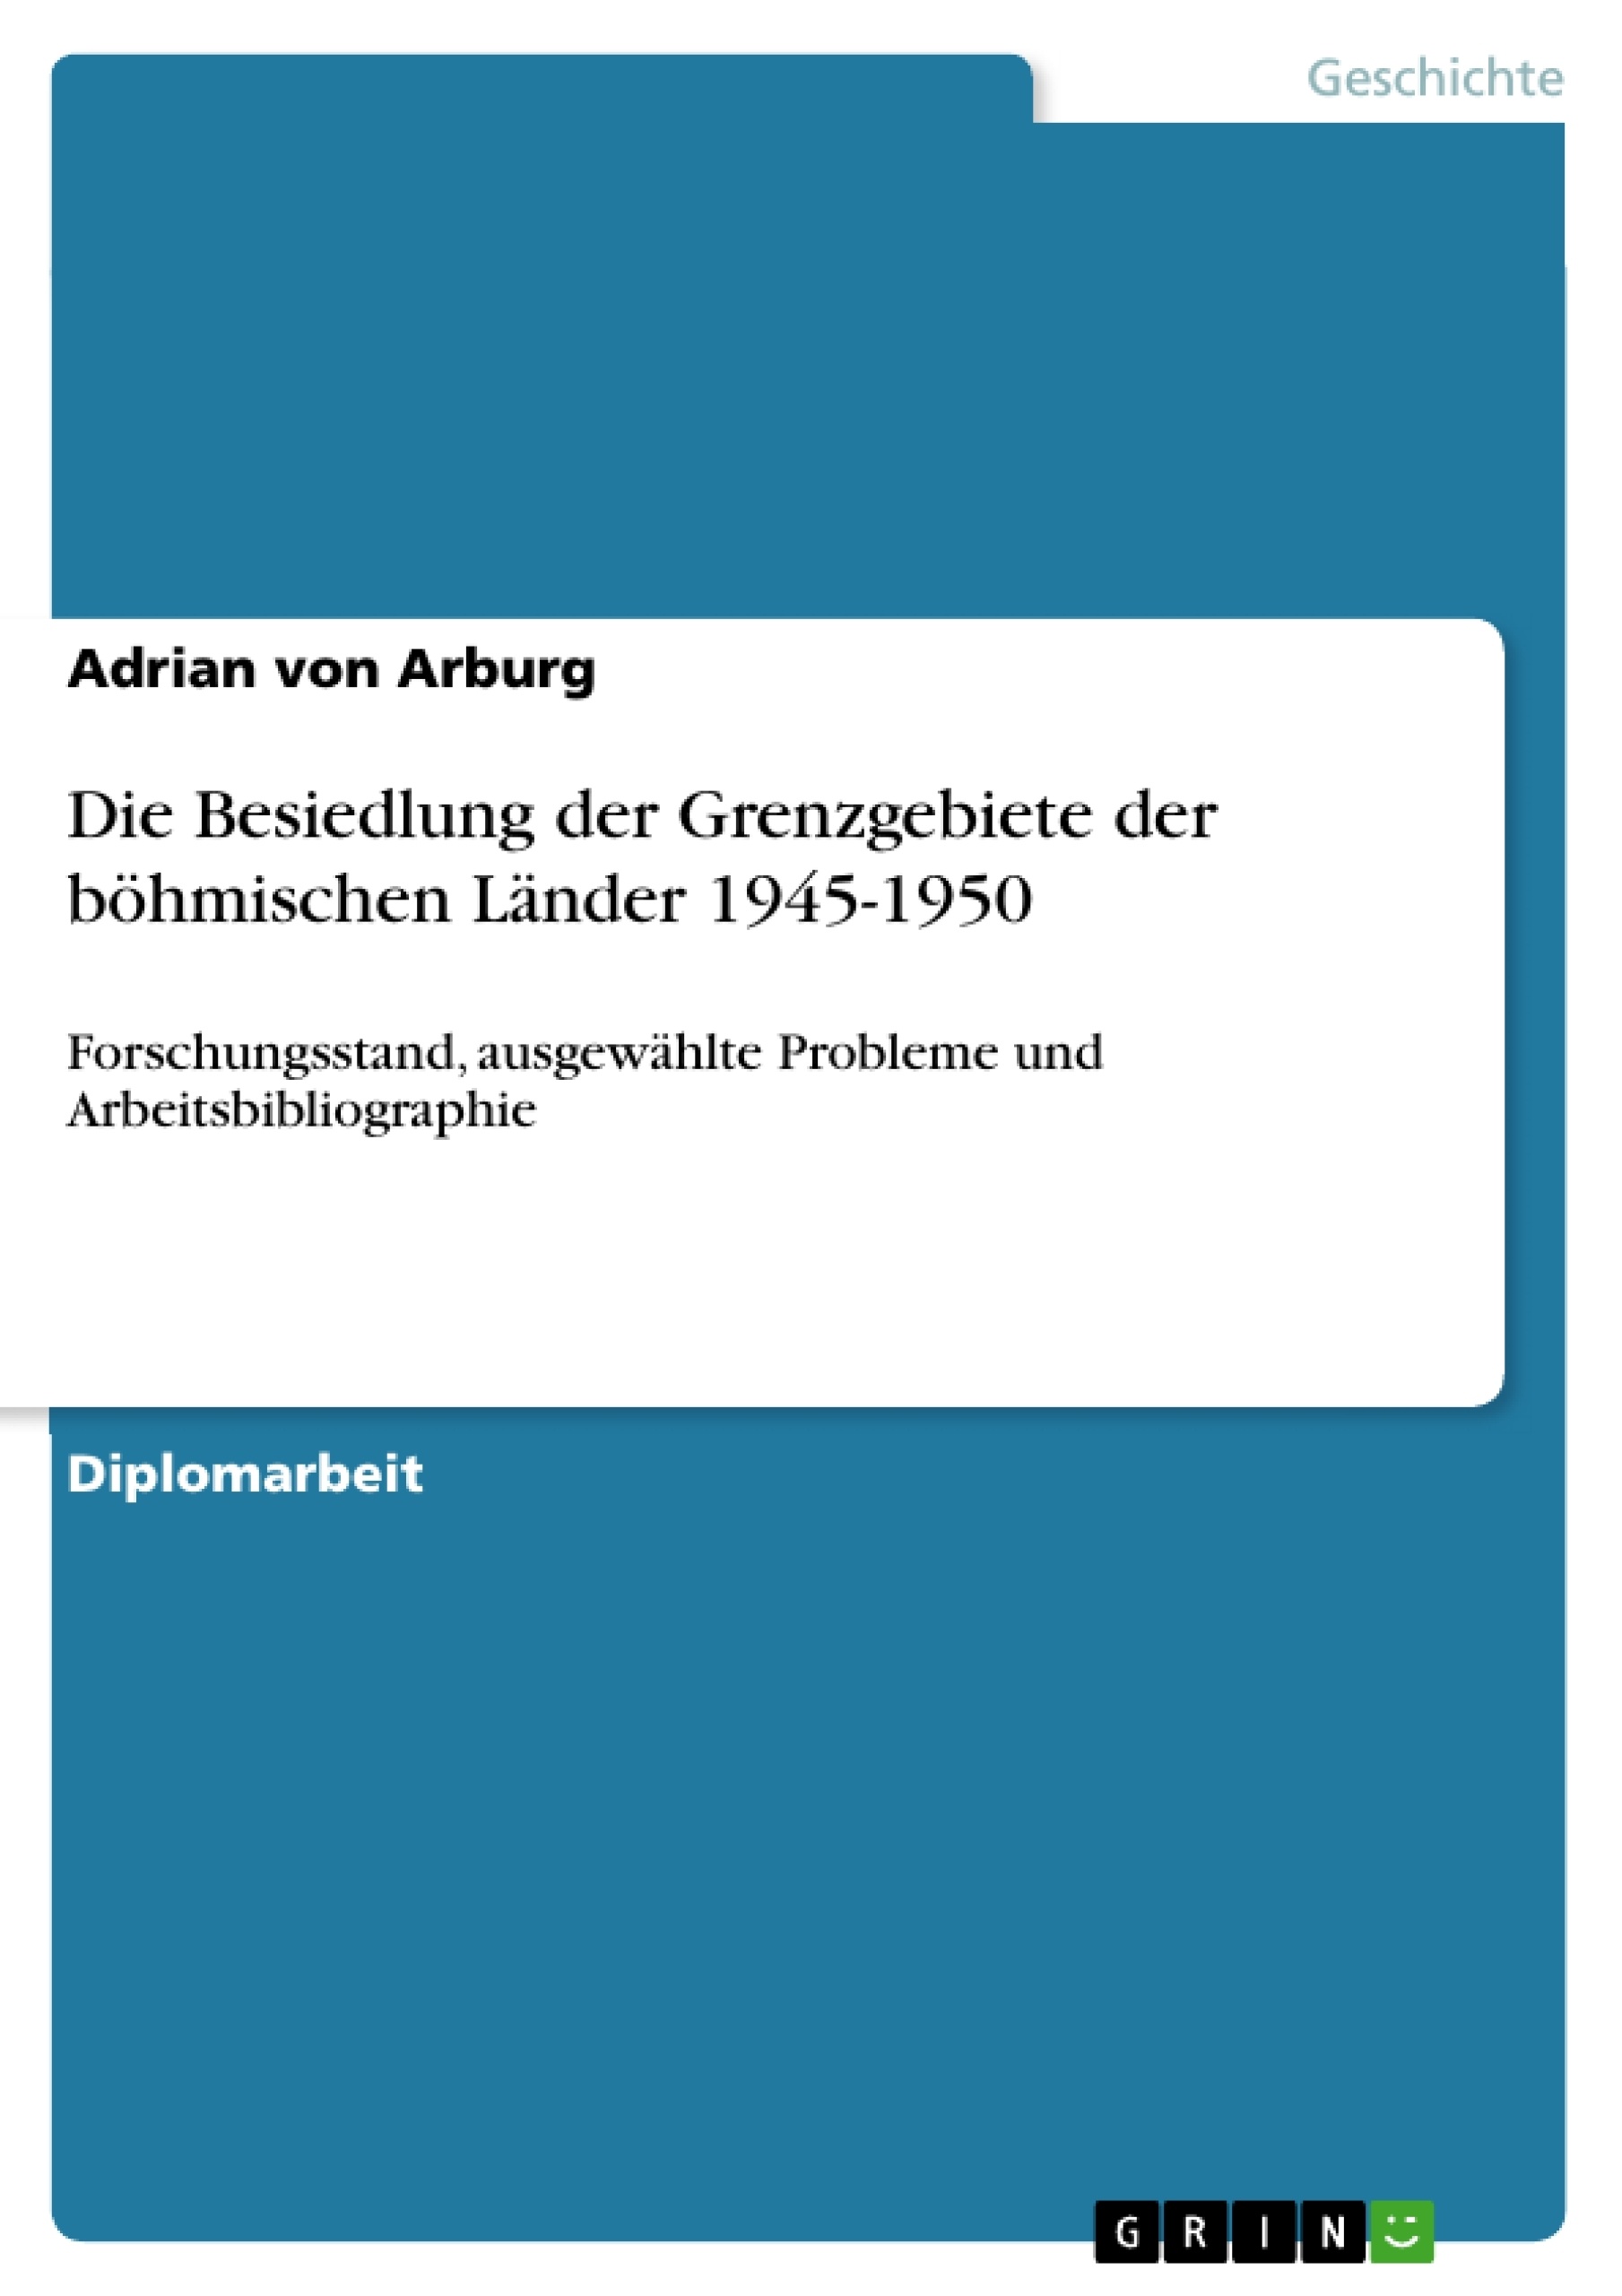 Titre: Die Besiedlung der Grenzgebiete der böhmischen Länder 1945-1950 